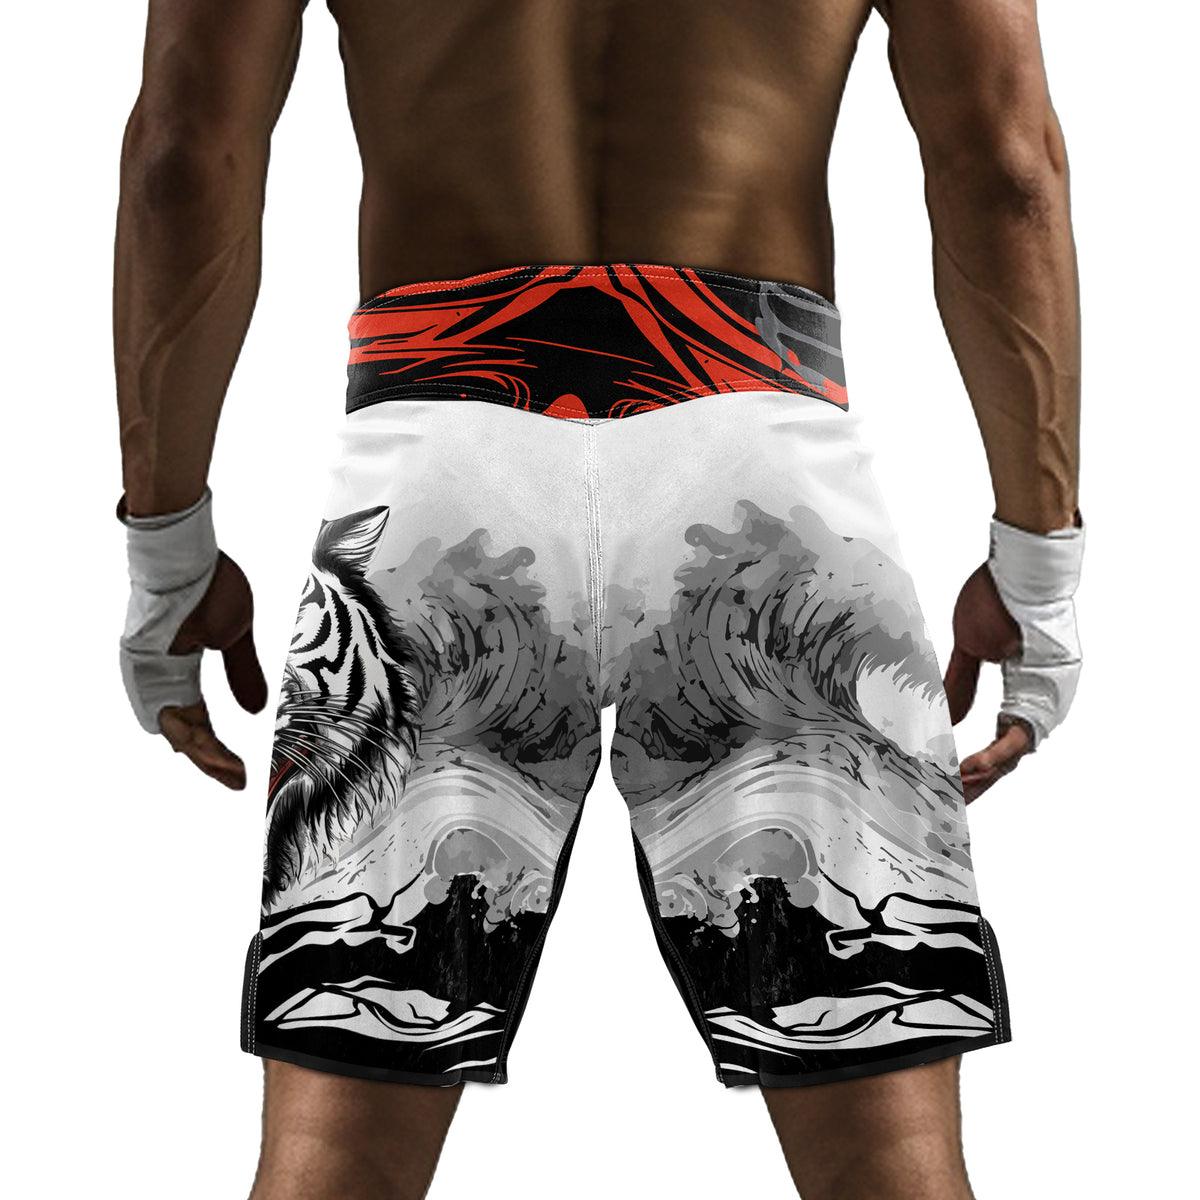 Rashninja Wild Tiger Men's Fight Shorts - Rashninja LLC